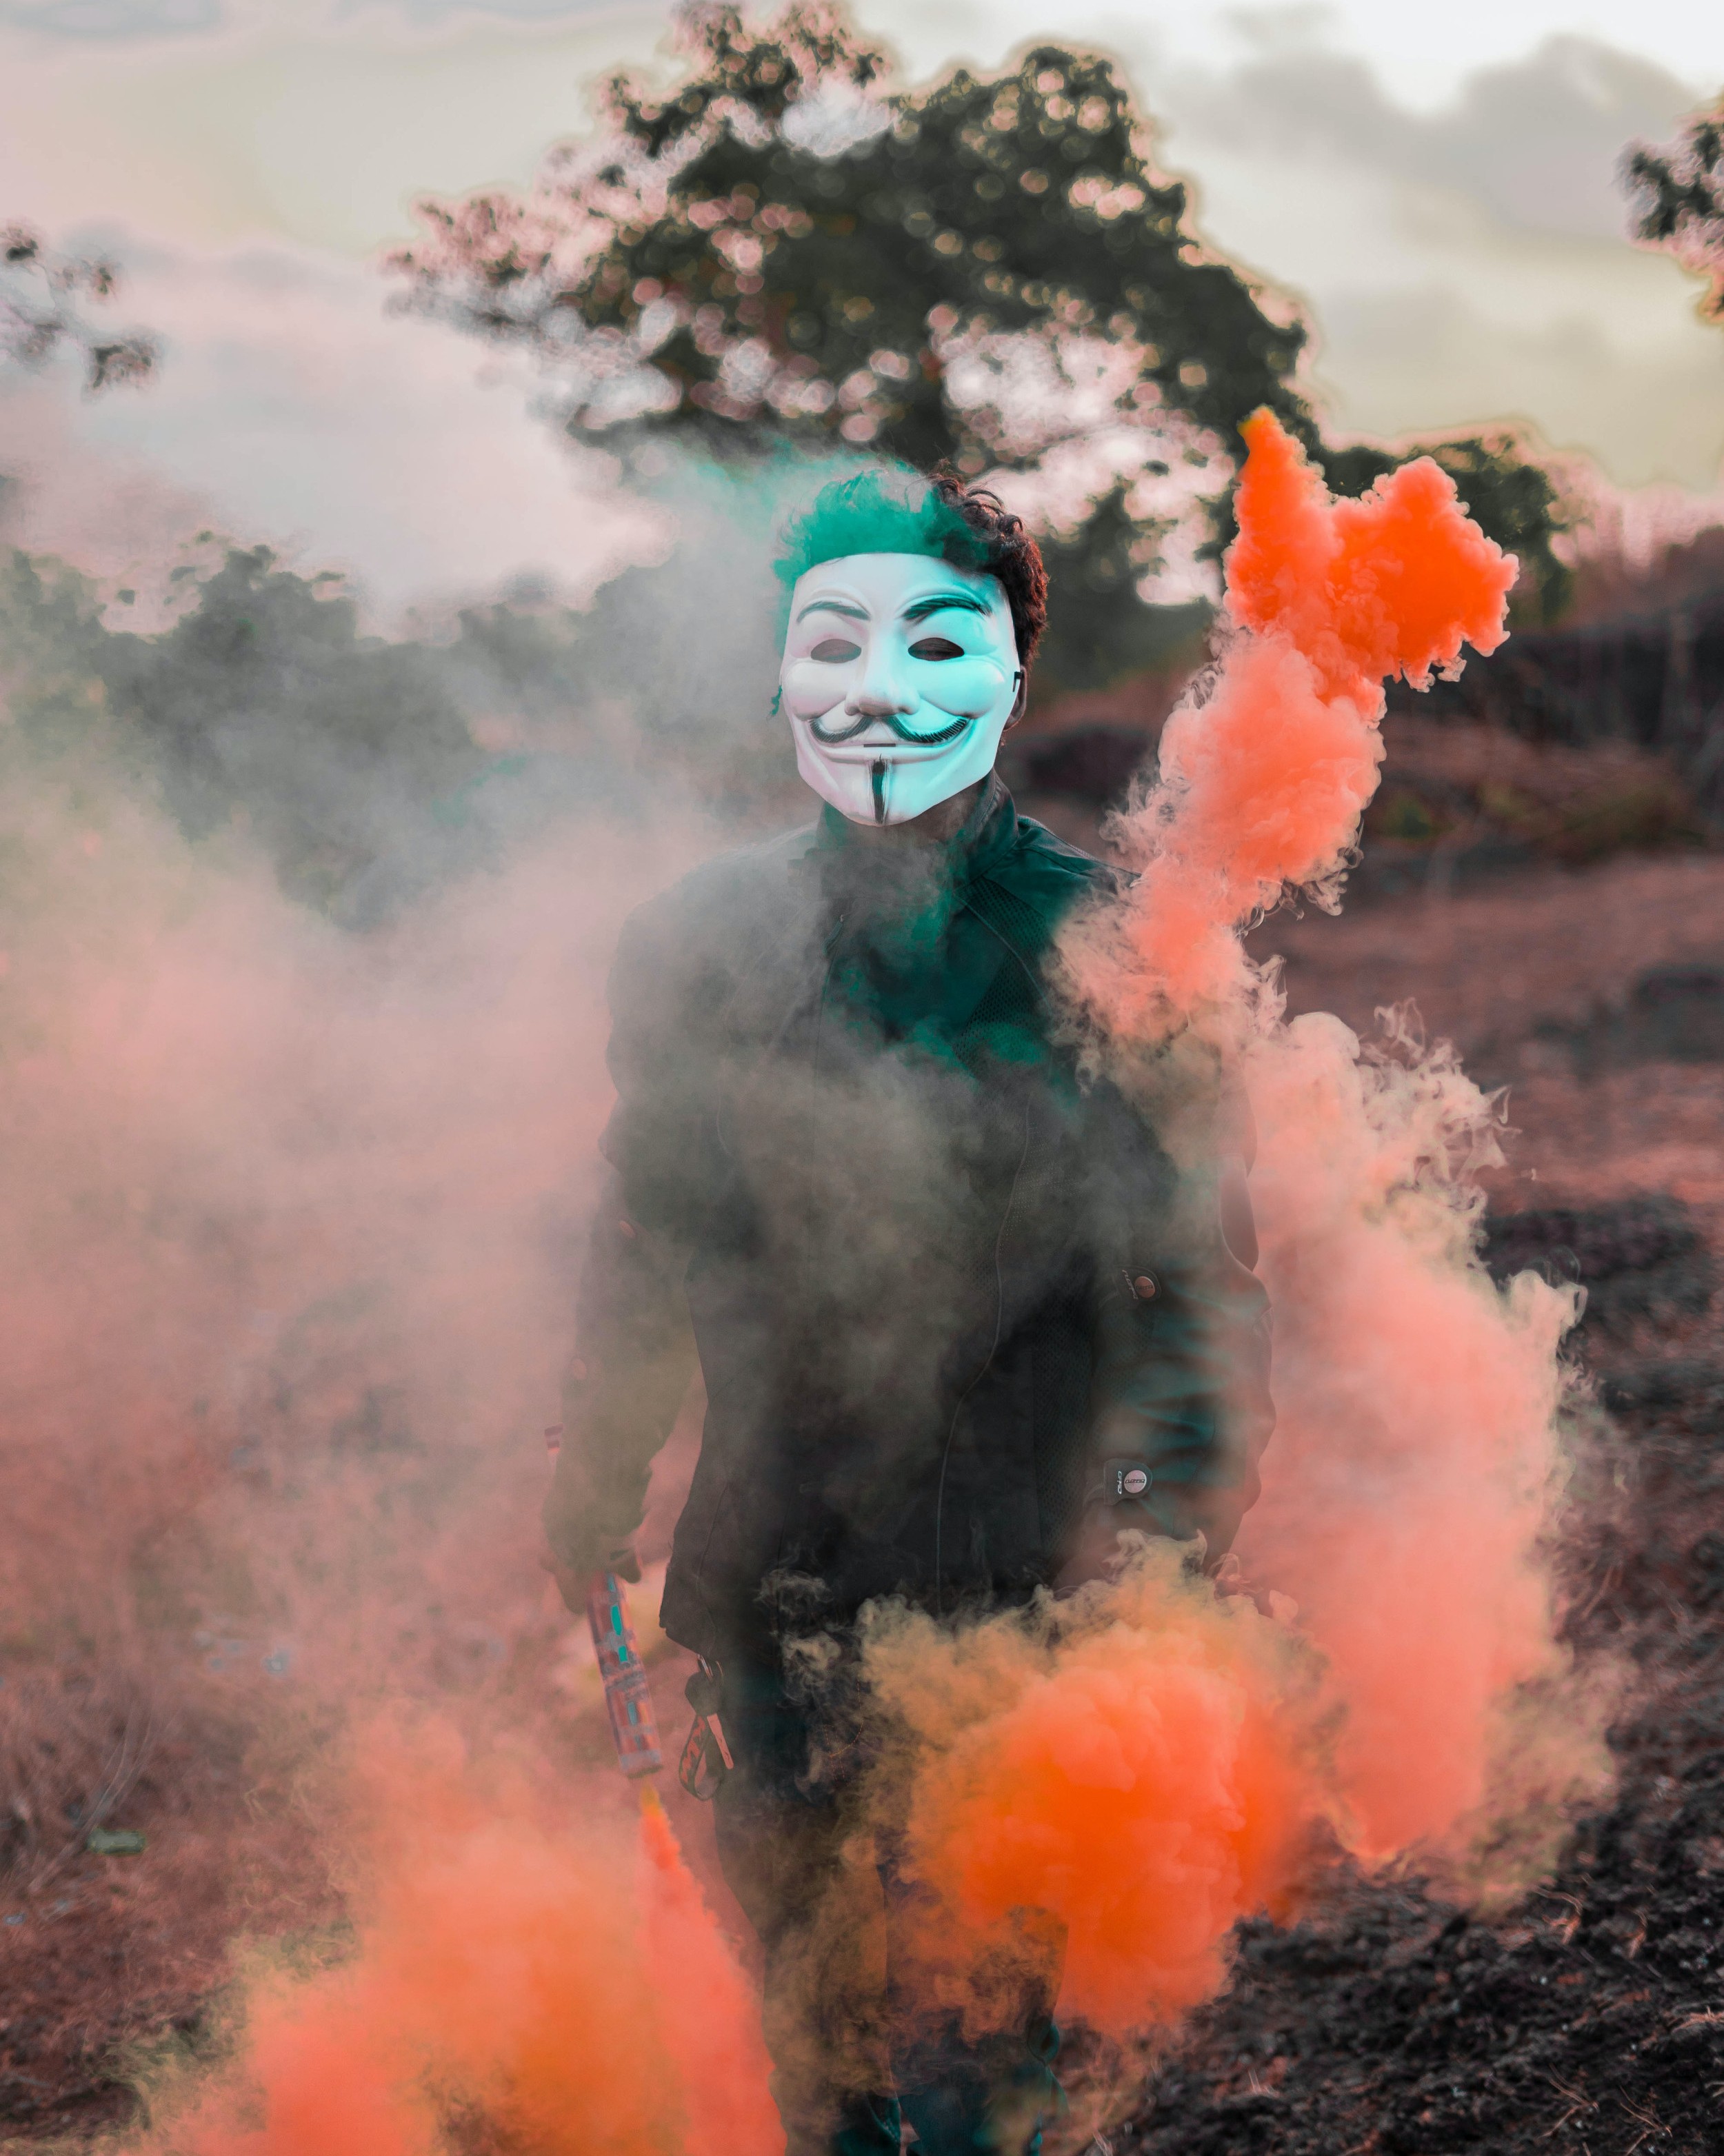 Foto von Asif pav: https://www.pexels.com/de-de/foto/person-die-guy-fawkes-maske-tragt-die-mit-farbigem-rauch-umgeben-ist-3093526/